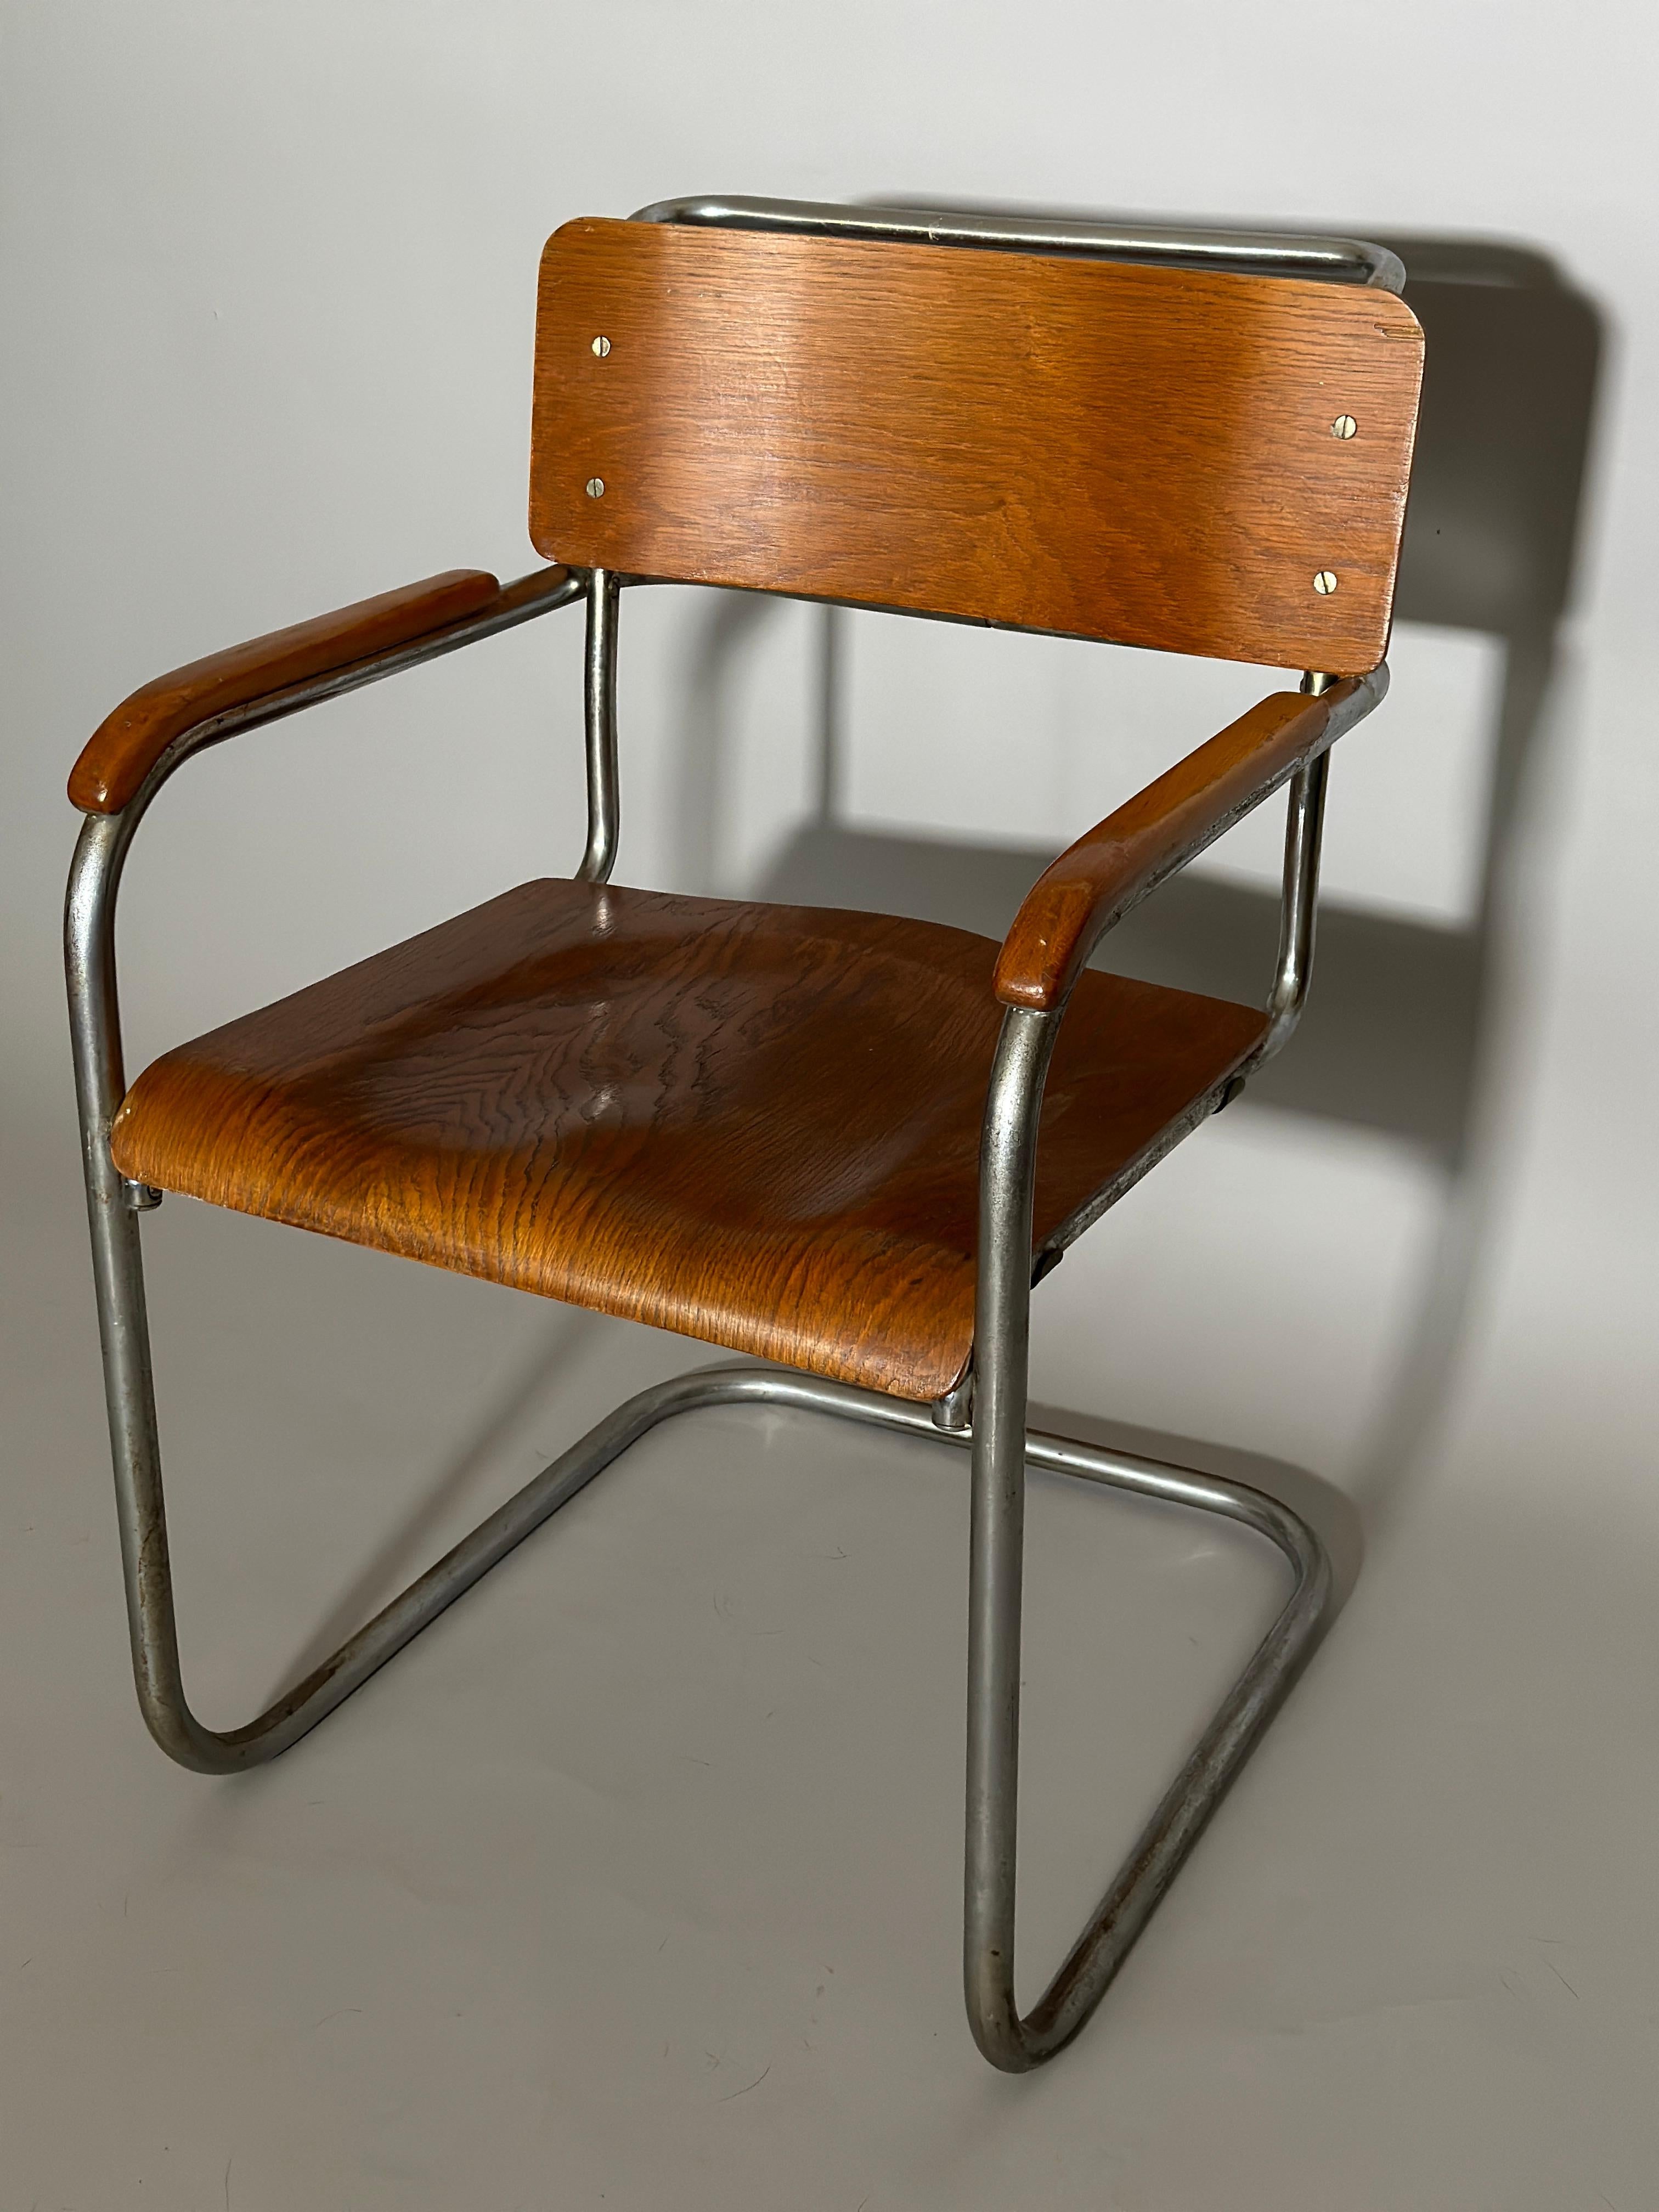 Der Stuhl B34 von Marcel Breuer wurde 1930 in der Tschechoslowakei für das Geschäft Bata Snofmaner hergestellt.